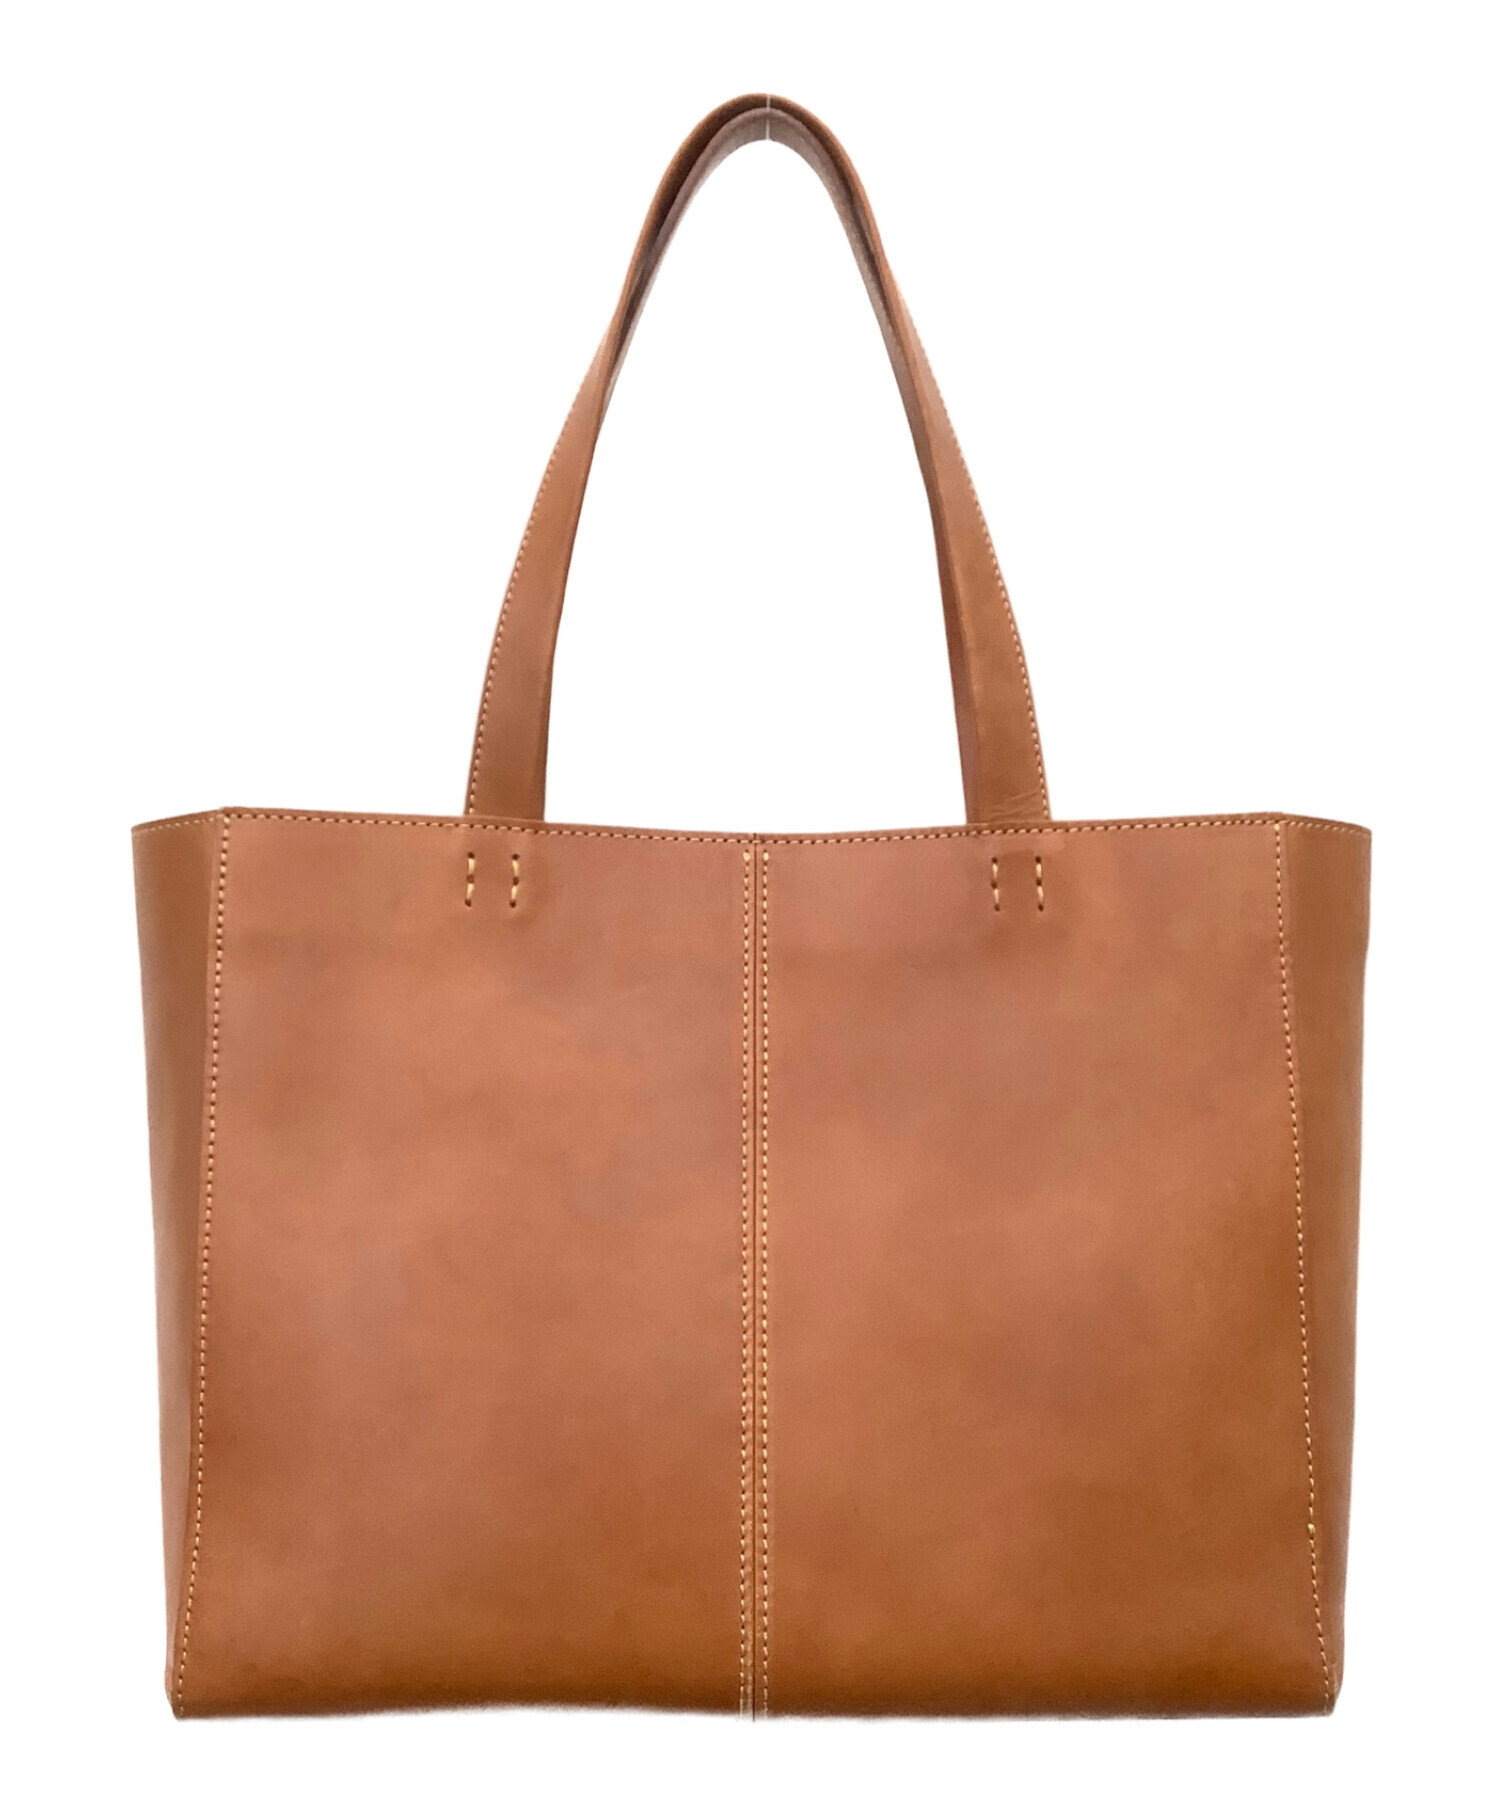 土屋鞄 (ツチヤカバン) ビジネストートバッグ ブラウン